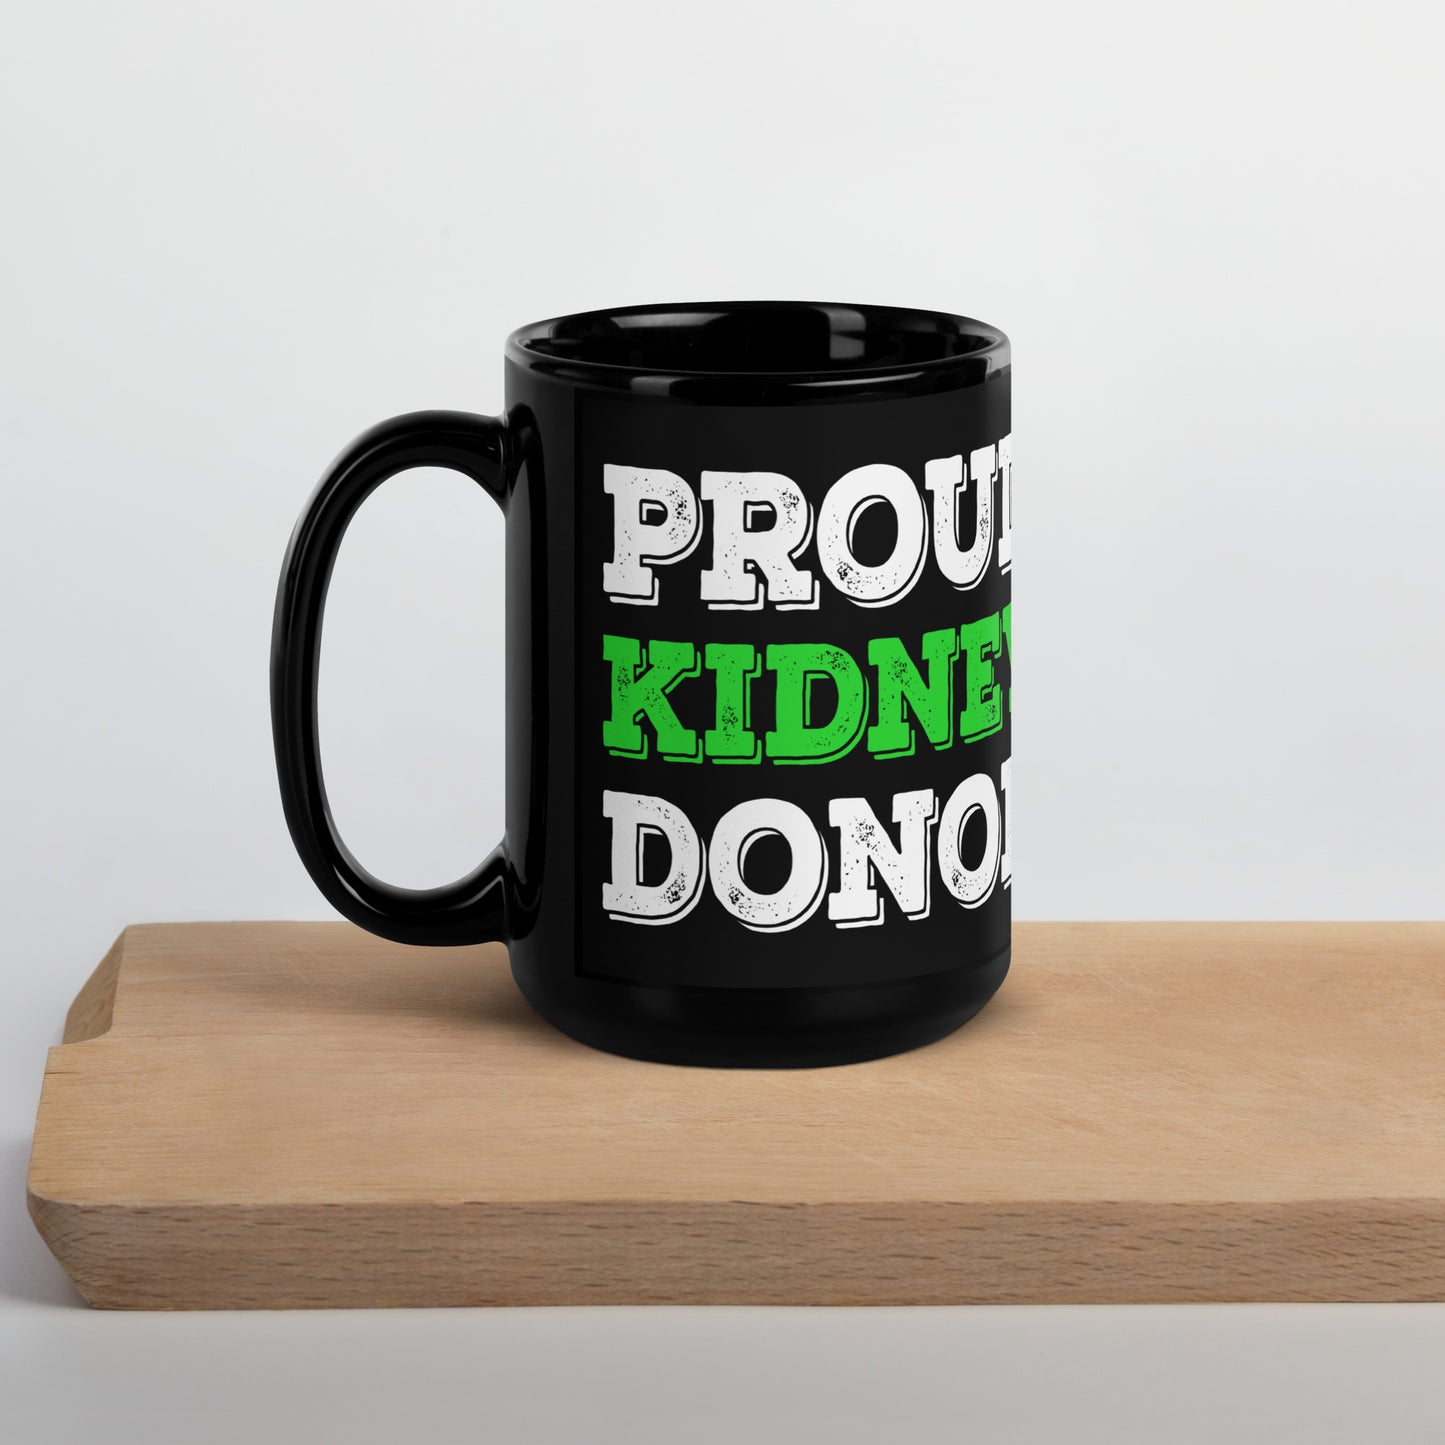 Proud Kidney Donor Ceramic Coffee Mug